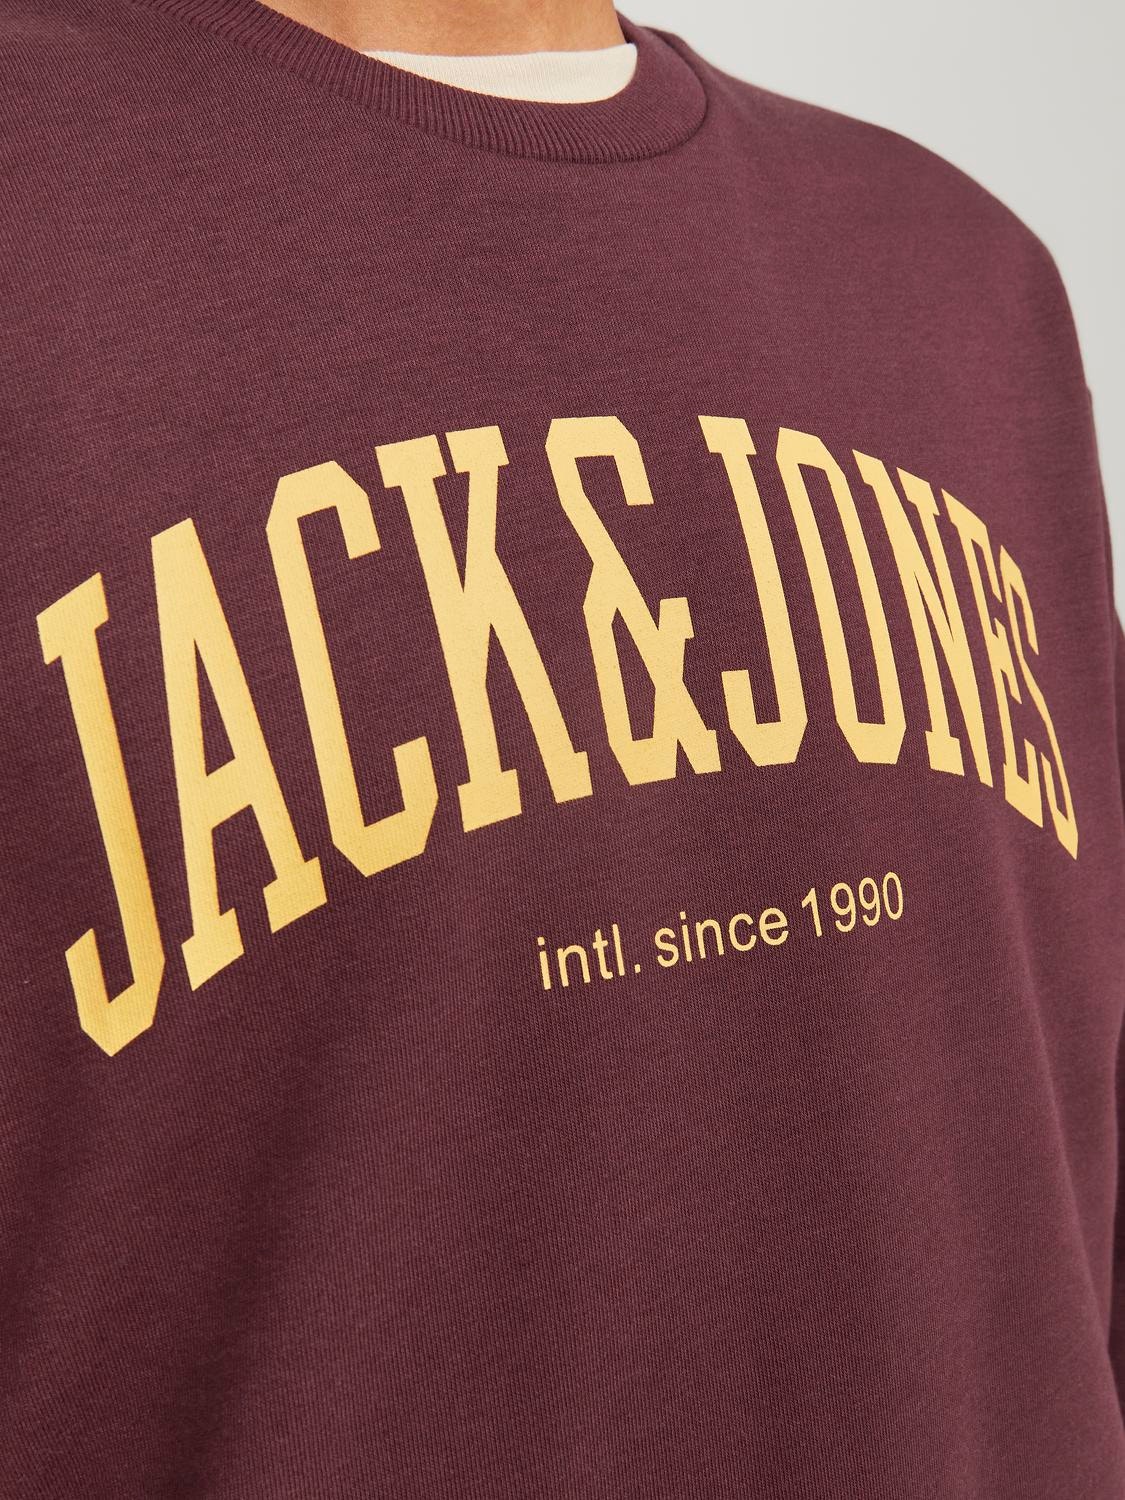 Jack & Jones Effen Sweatshirt met ronde hals -Port Royale - 12248431